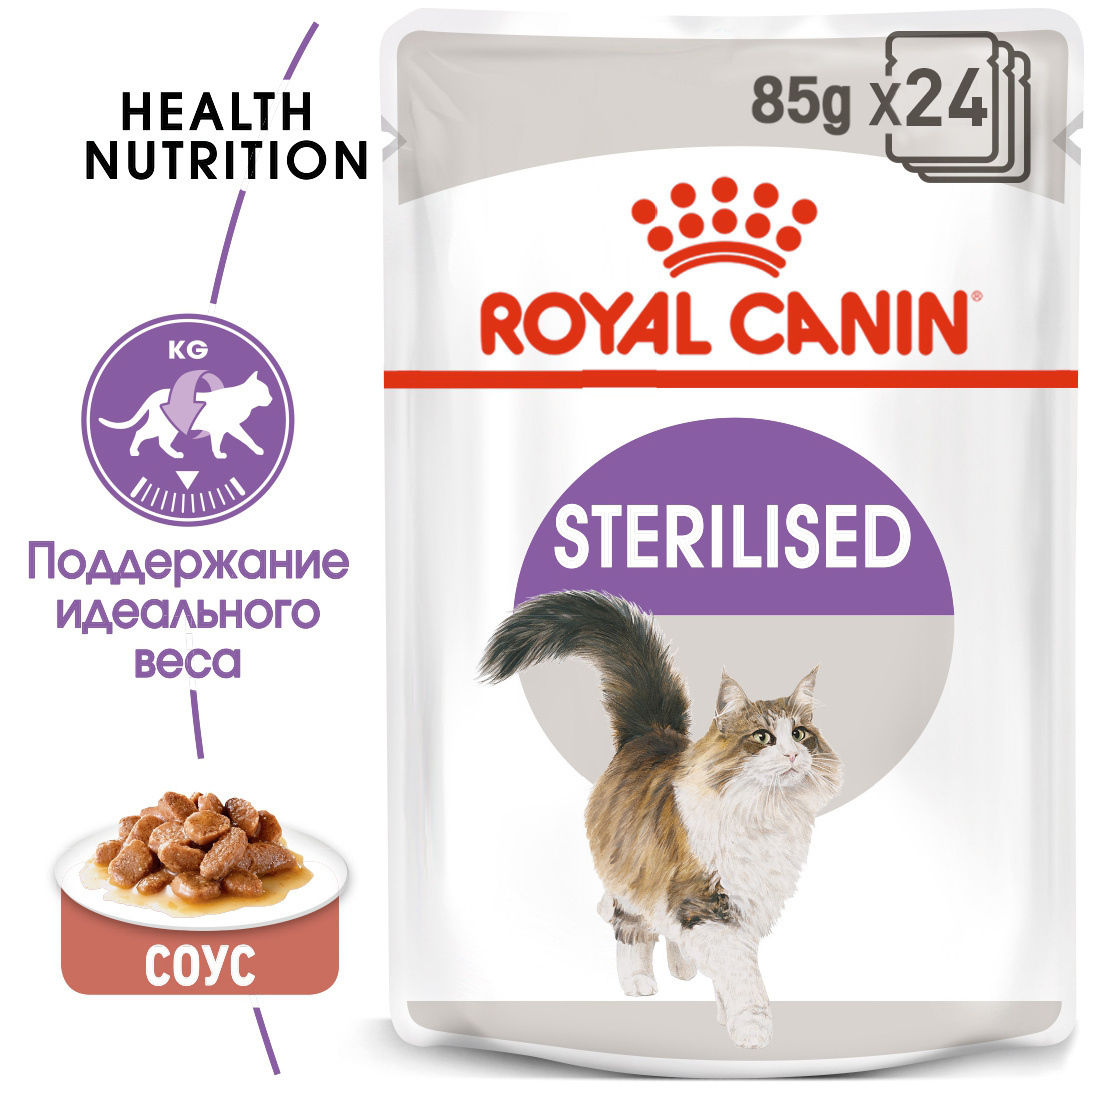 Royal Canin кусочки в соусе для кастрированных кошек 1-7лет (85 г) от Petshop